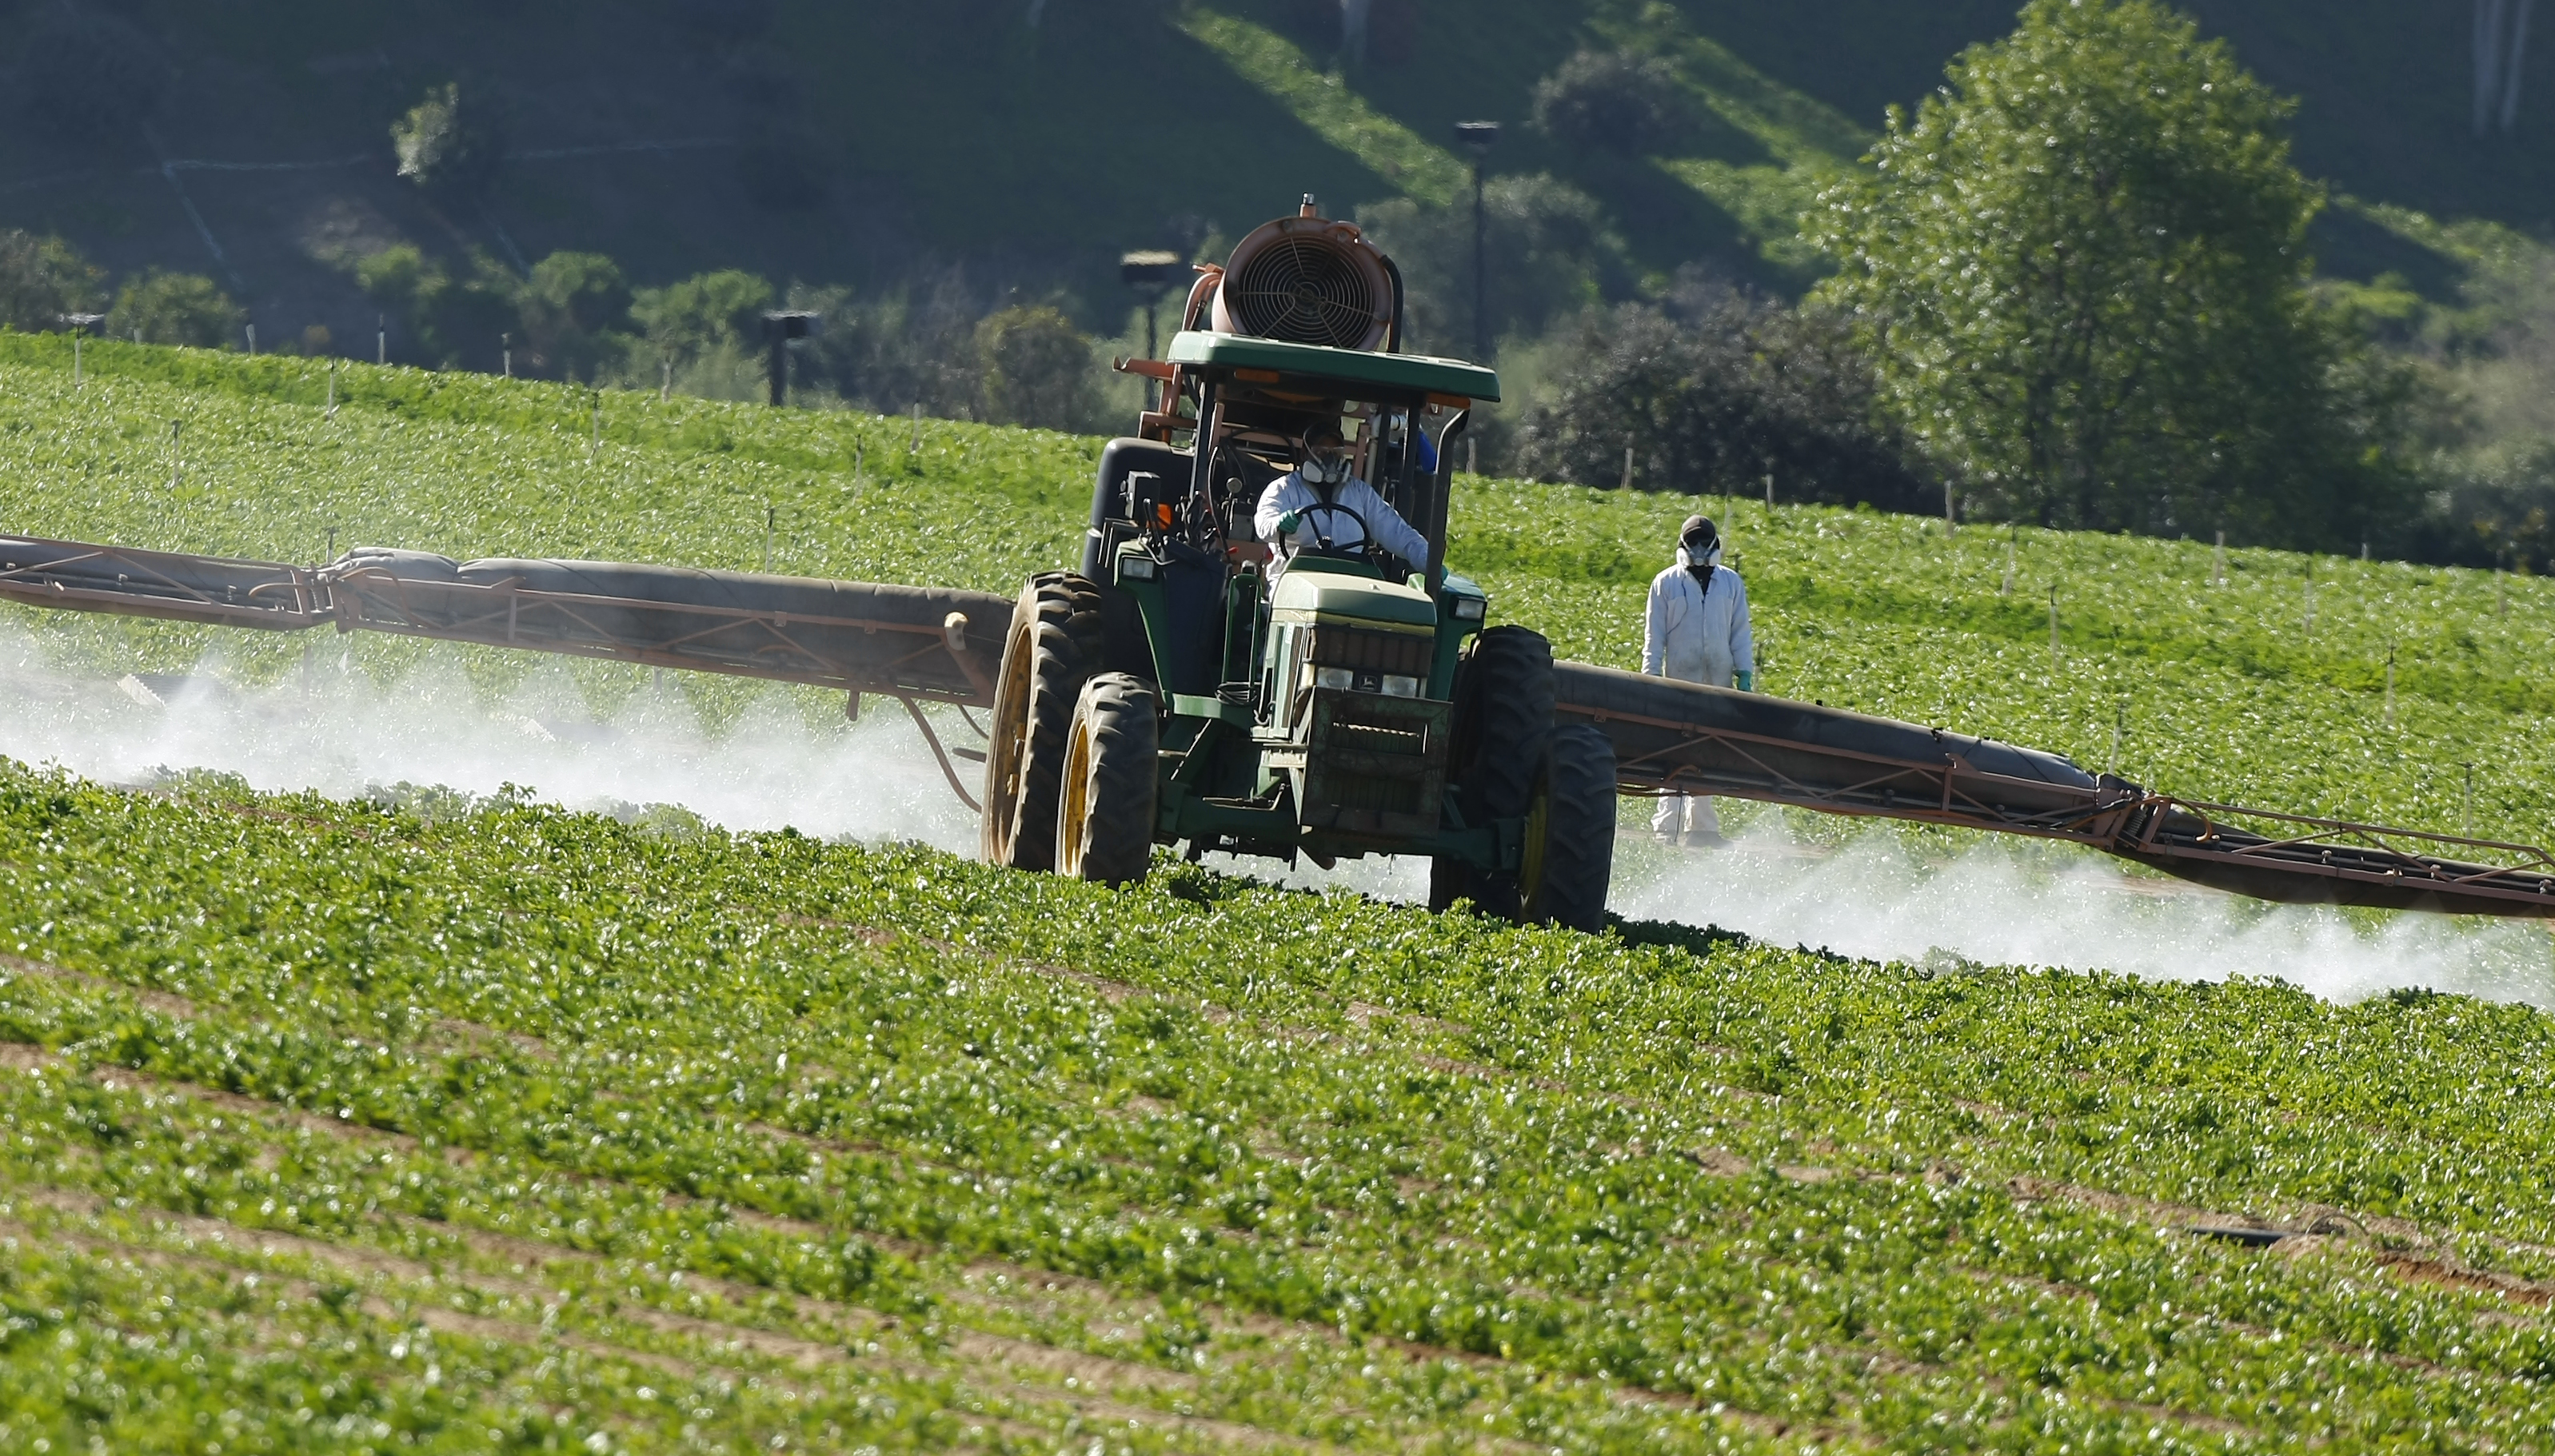 Comment Rennes Métropole veut atteindre le « zéro pesticide de synthèse » d'ici à 2030